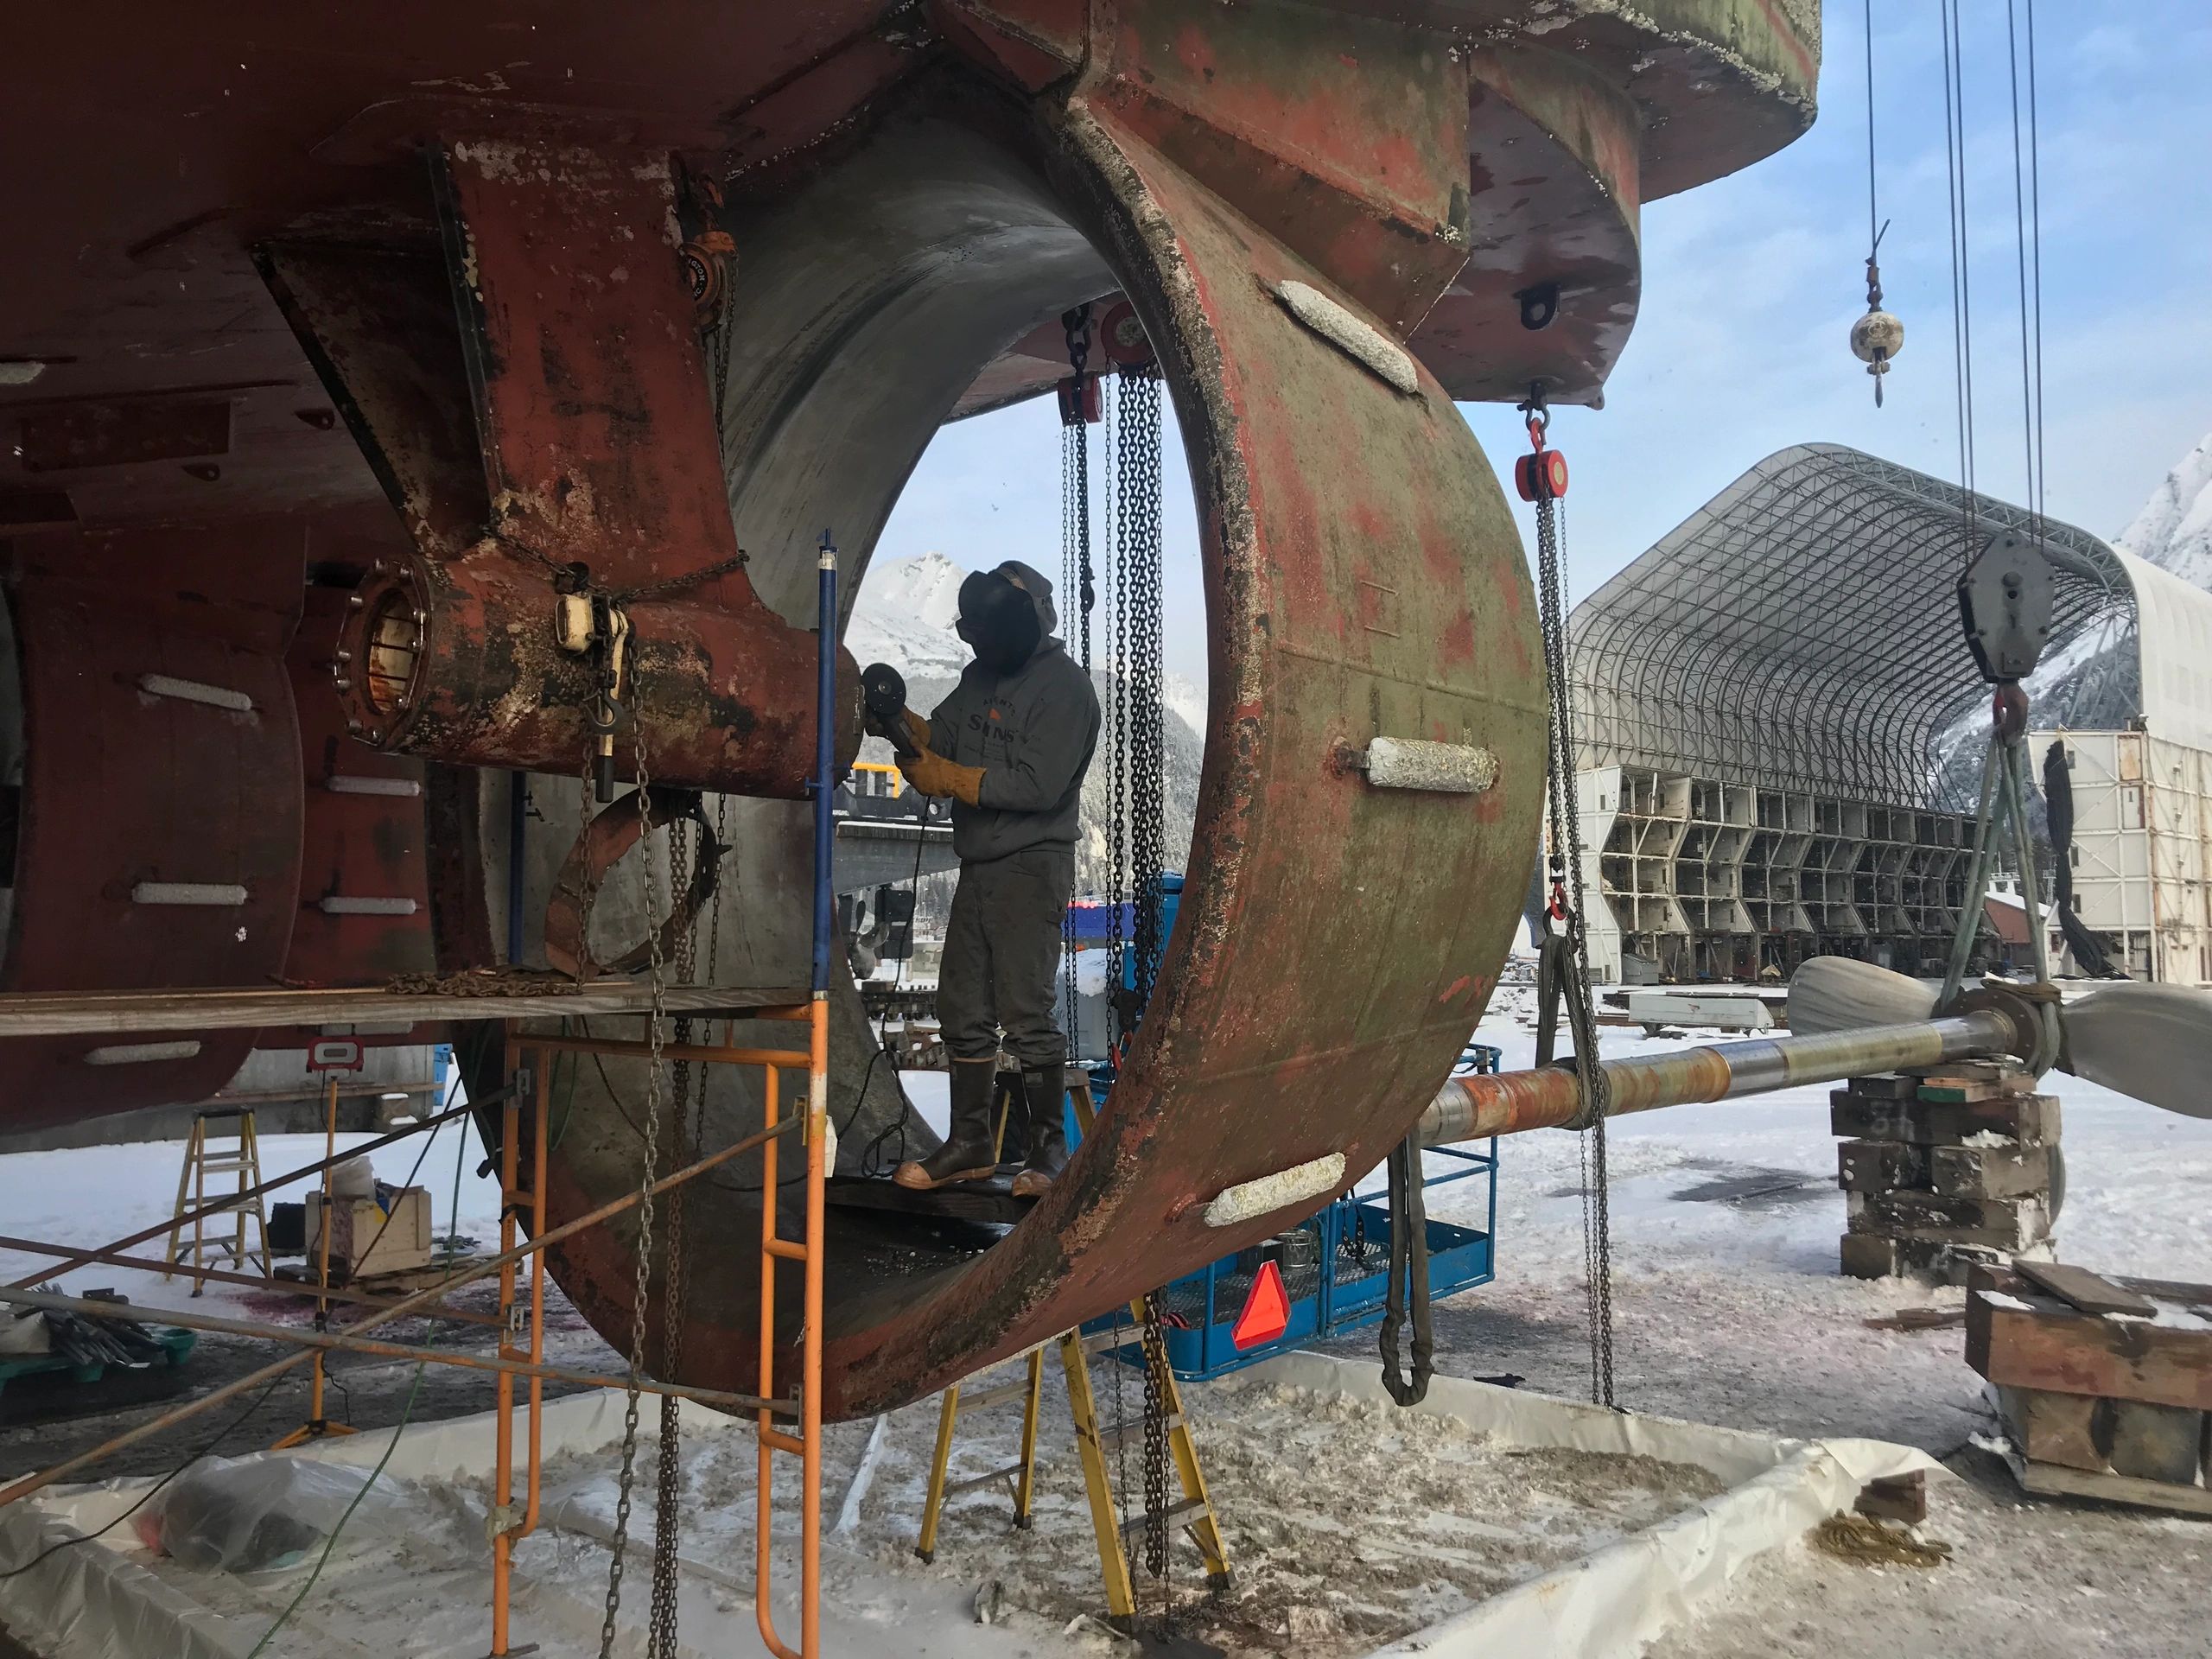 Cutlass Bearing replacement in a shipyard